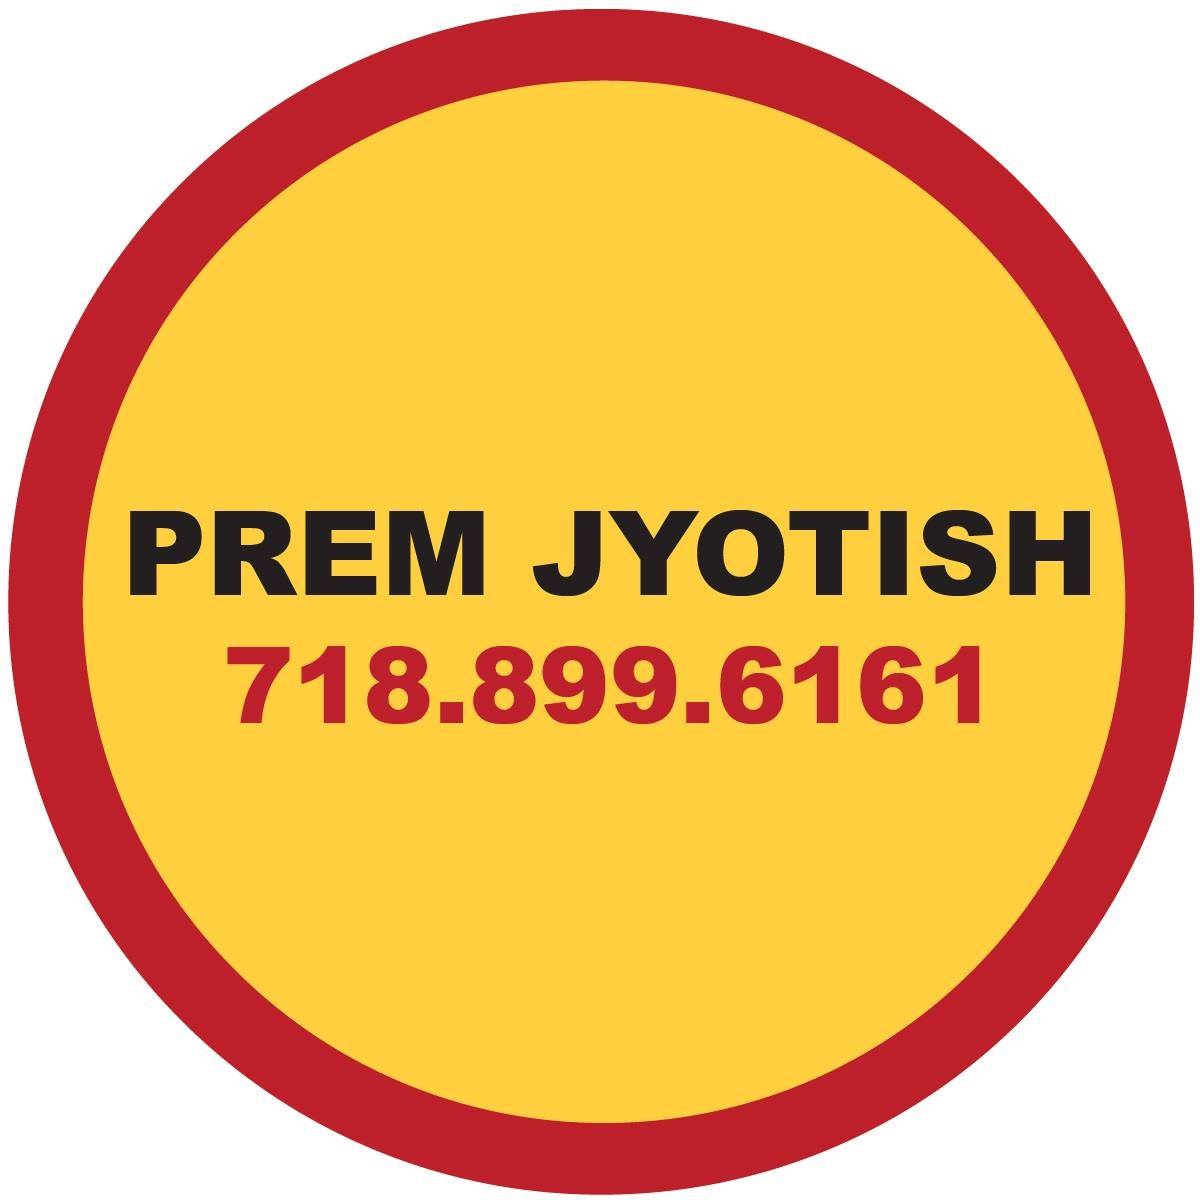 Company logo of Prem Jyotish